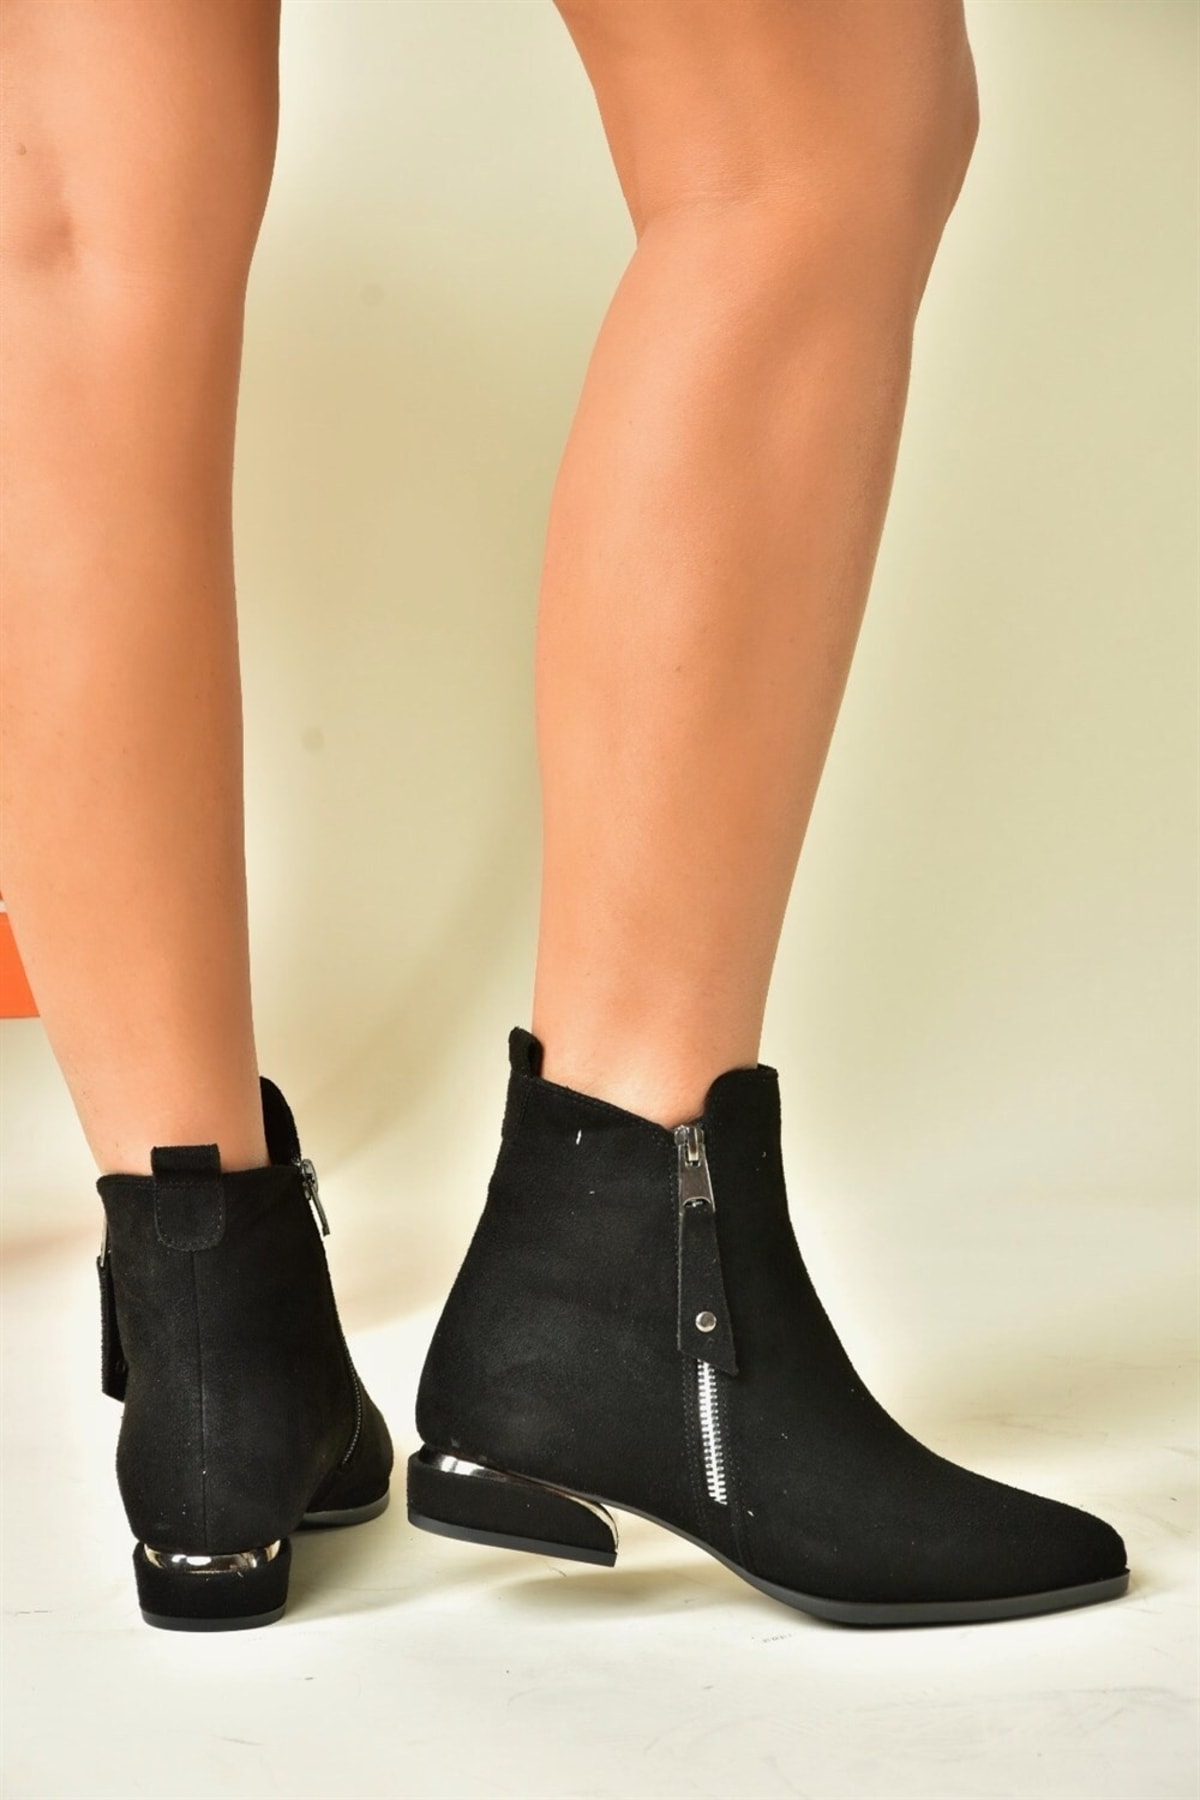 Levně Fox Shoes Women's Black Suede Low Heeled Boots